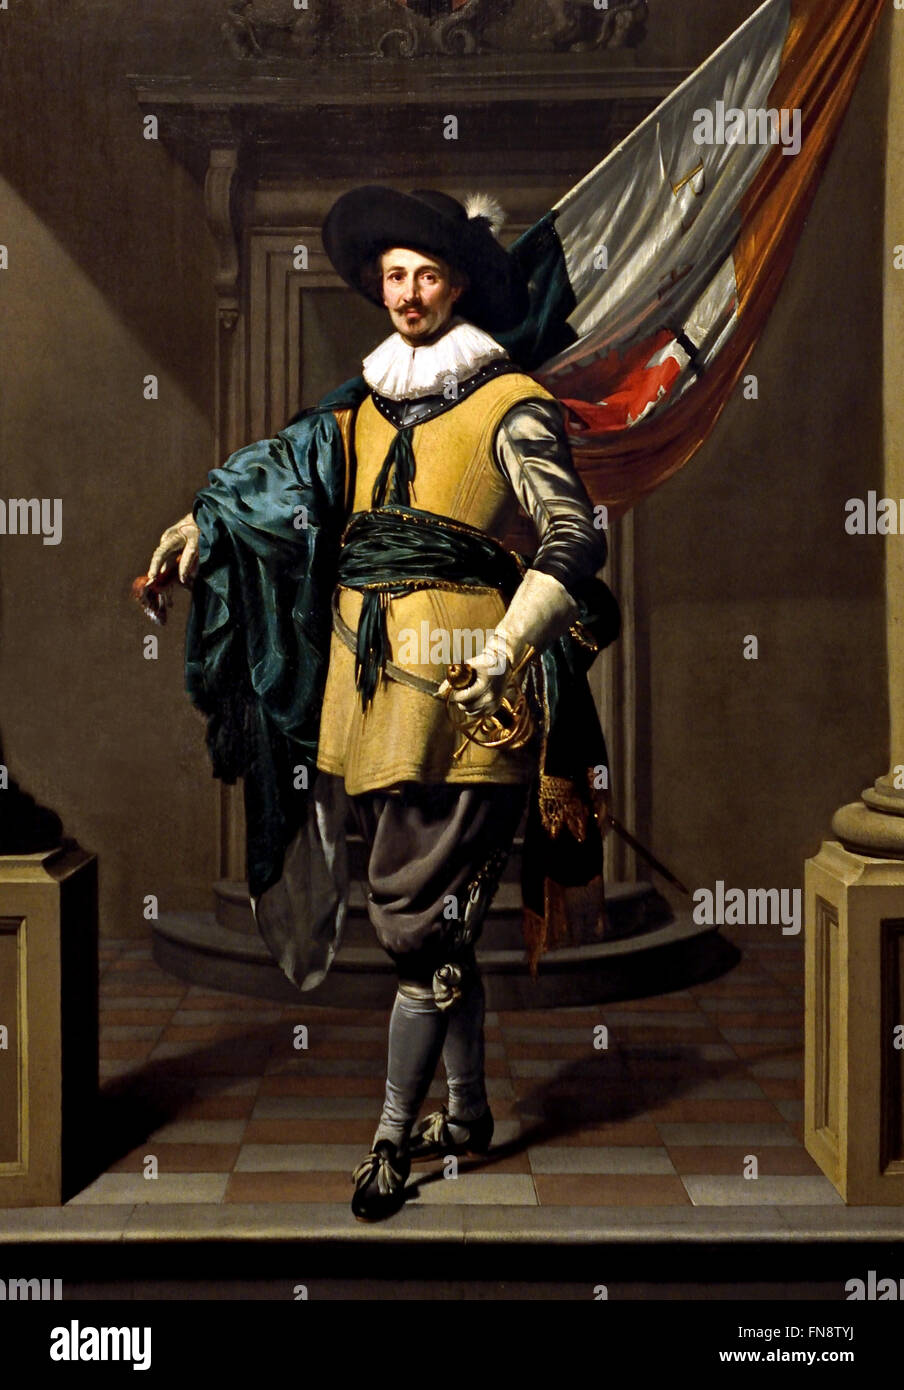 Porträt von Loef Vredericx (1590-1668) als ein Fähnrich 1626 Thomas de Keyser, Niederlande Niederlande (In seinem täglichen Leben Loef Vredericx war ein Silberschmied, aber hier ist er in der ehrenvollen Position des Ensign der bürgerlichen Miliz Amsterdam dargestellt) Stockfoto